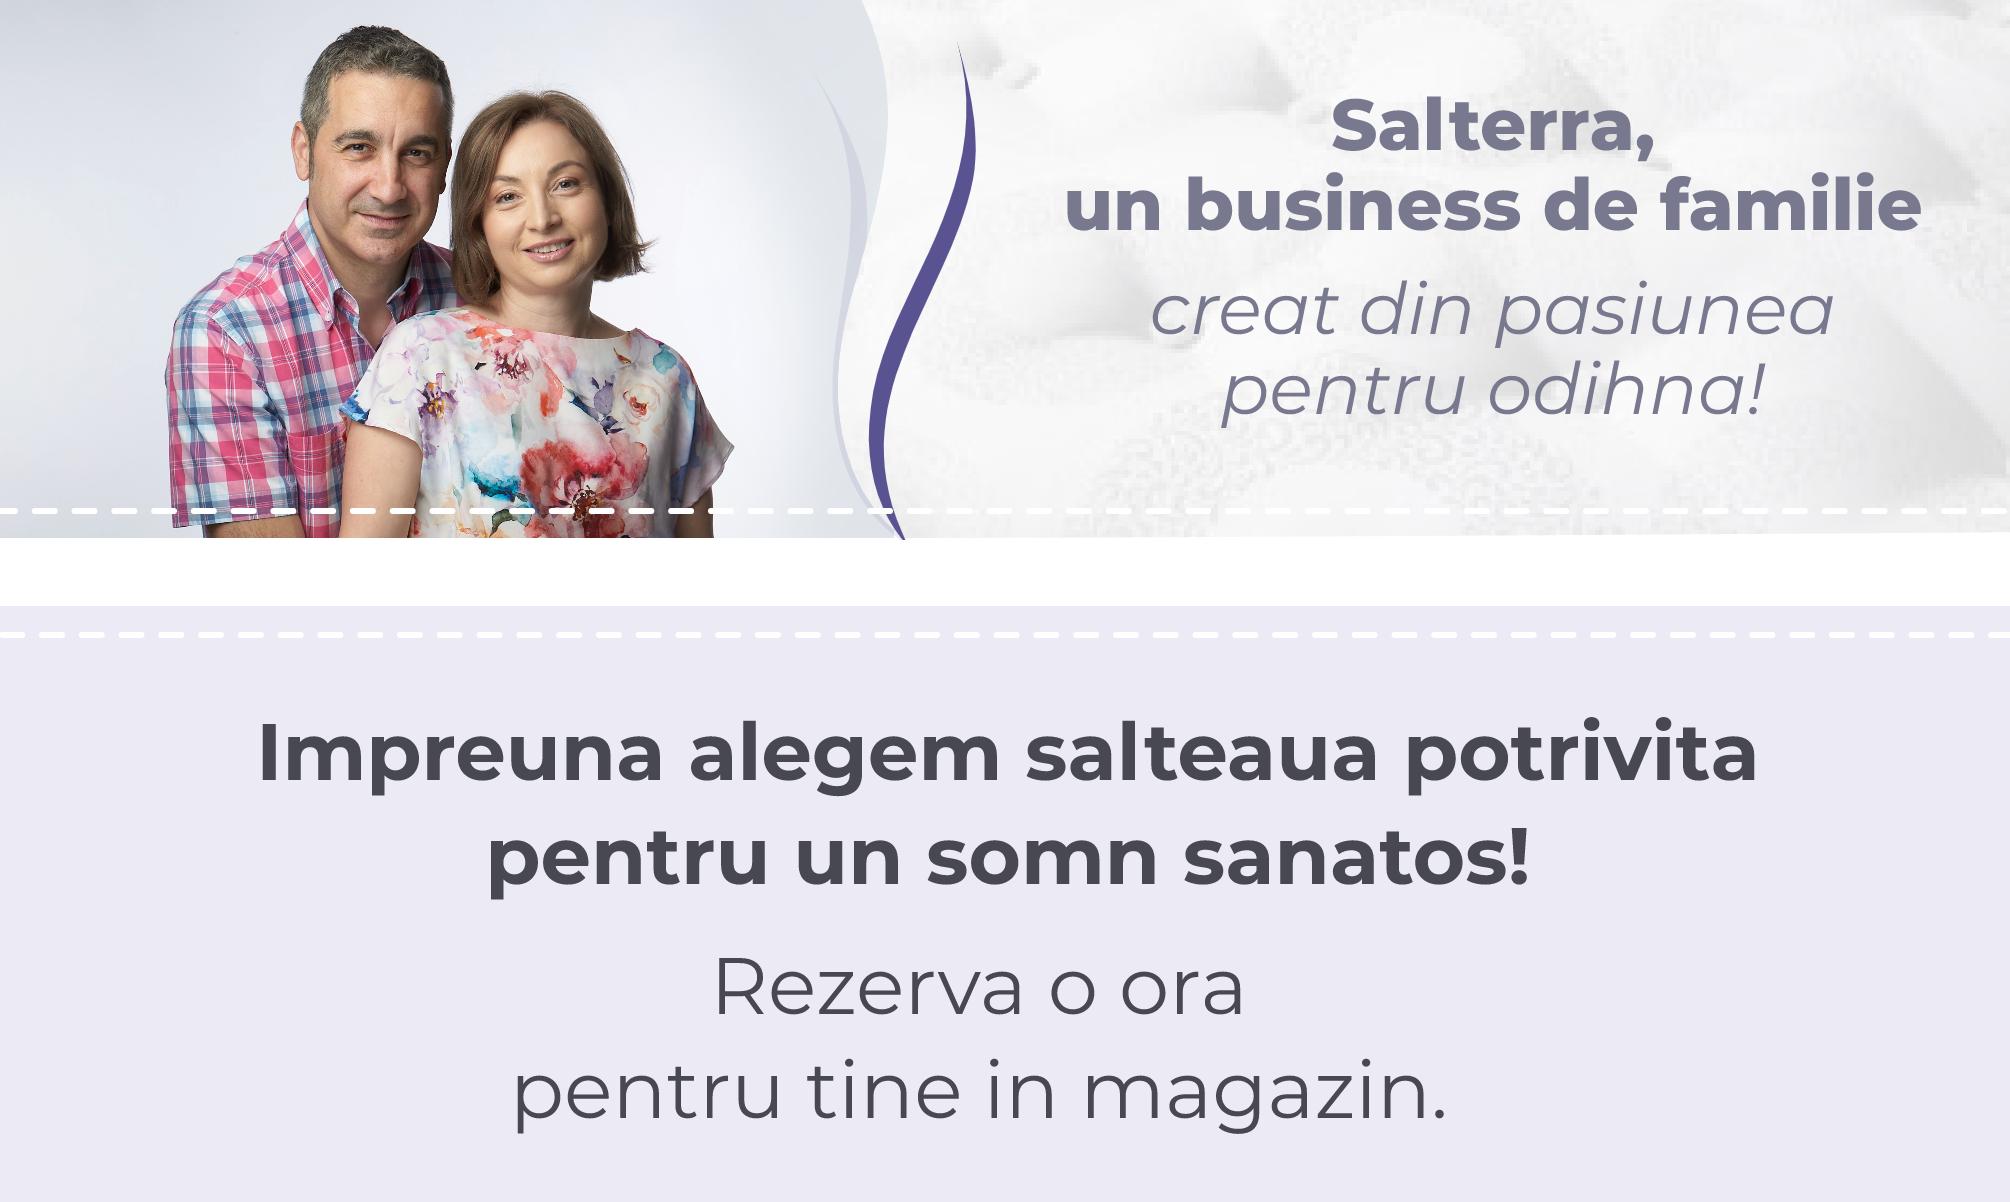 Salterra, un business de familie creat din pasiunea pentru odihna